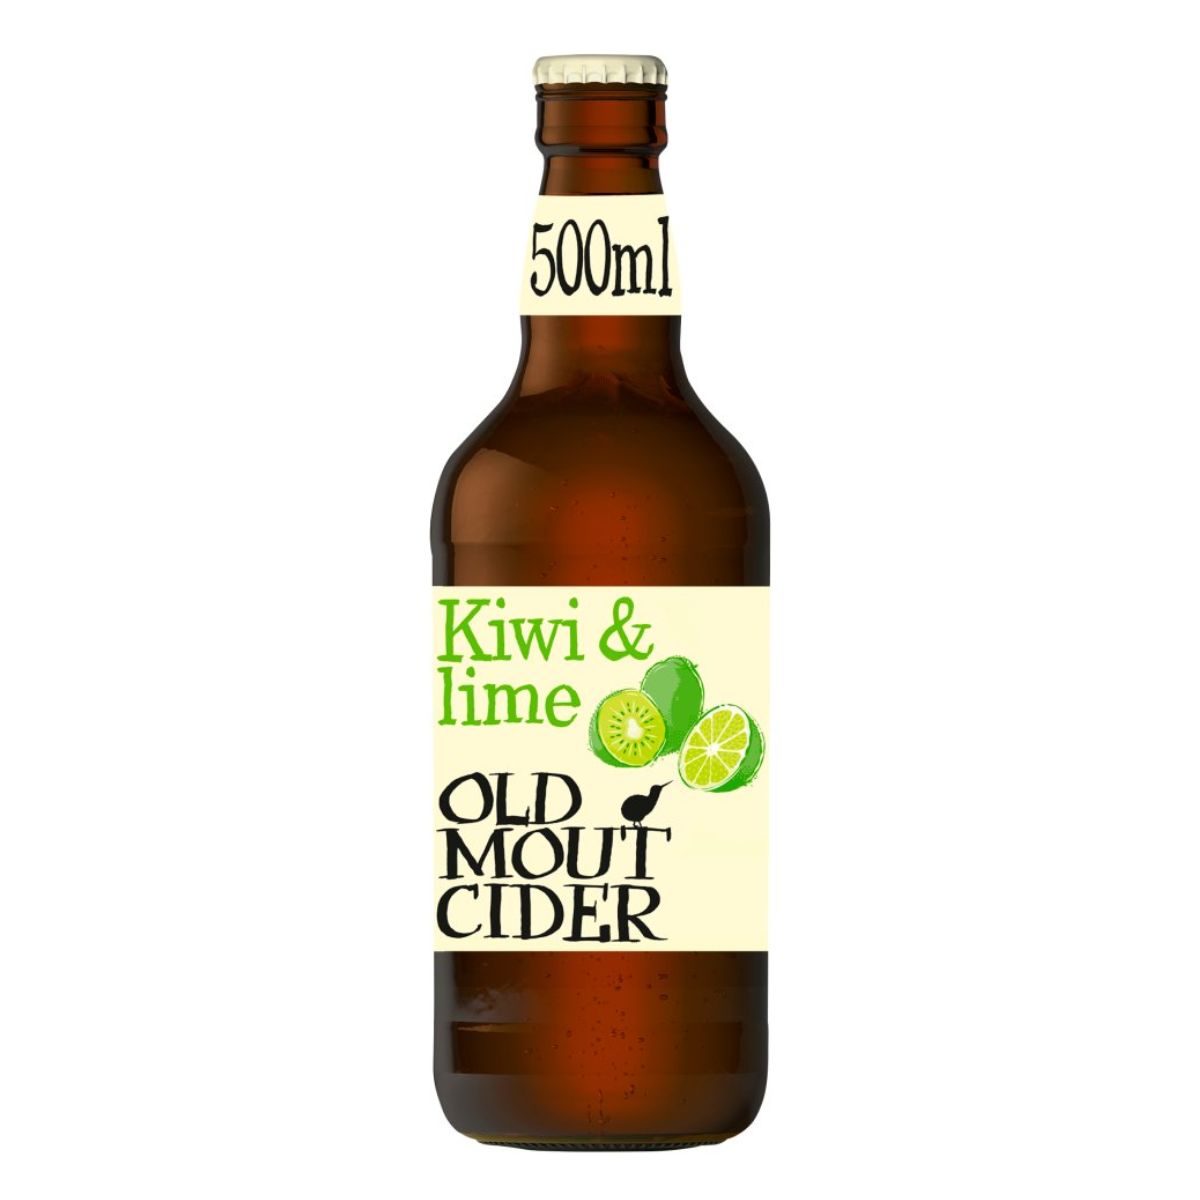 Old Mout Cider - Kiwi & Lime Bottle (4.0% ABV) - 500ml.